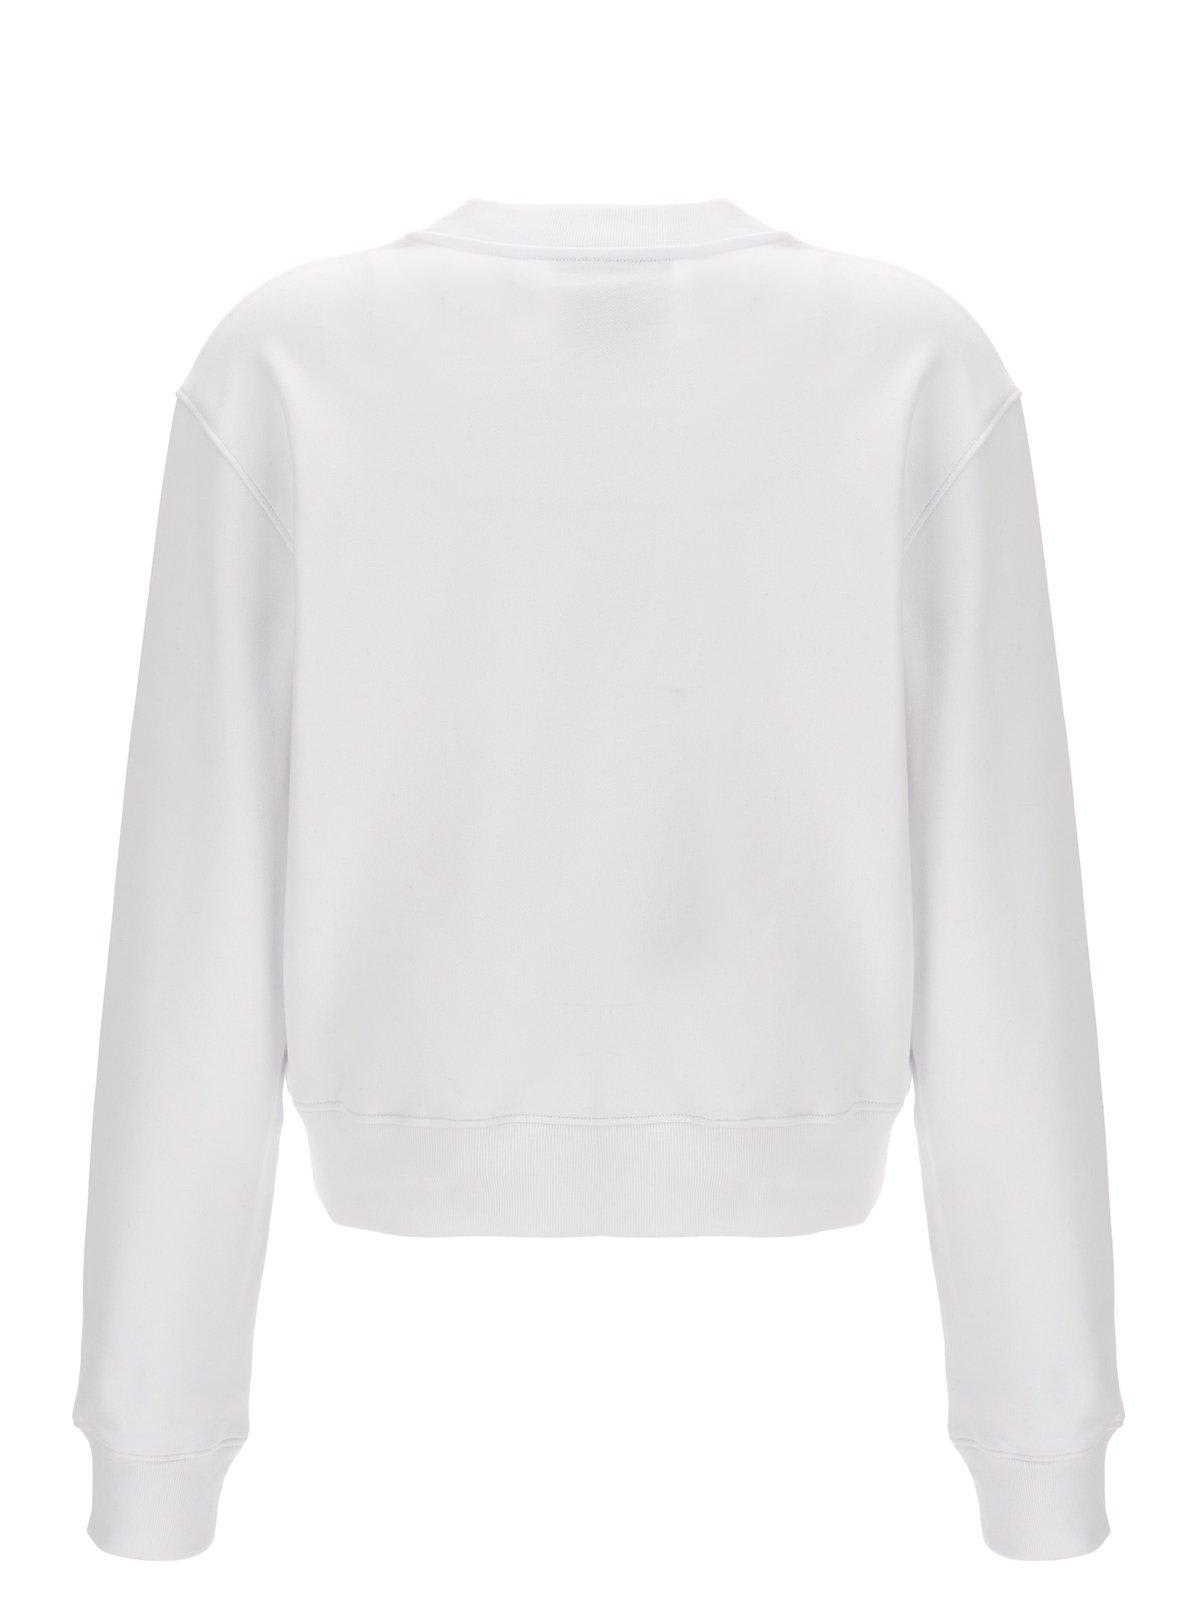 Shop Moschino 40 Years Of Love Sweatshirt In White